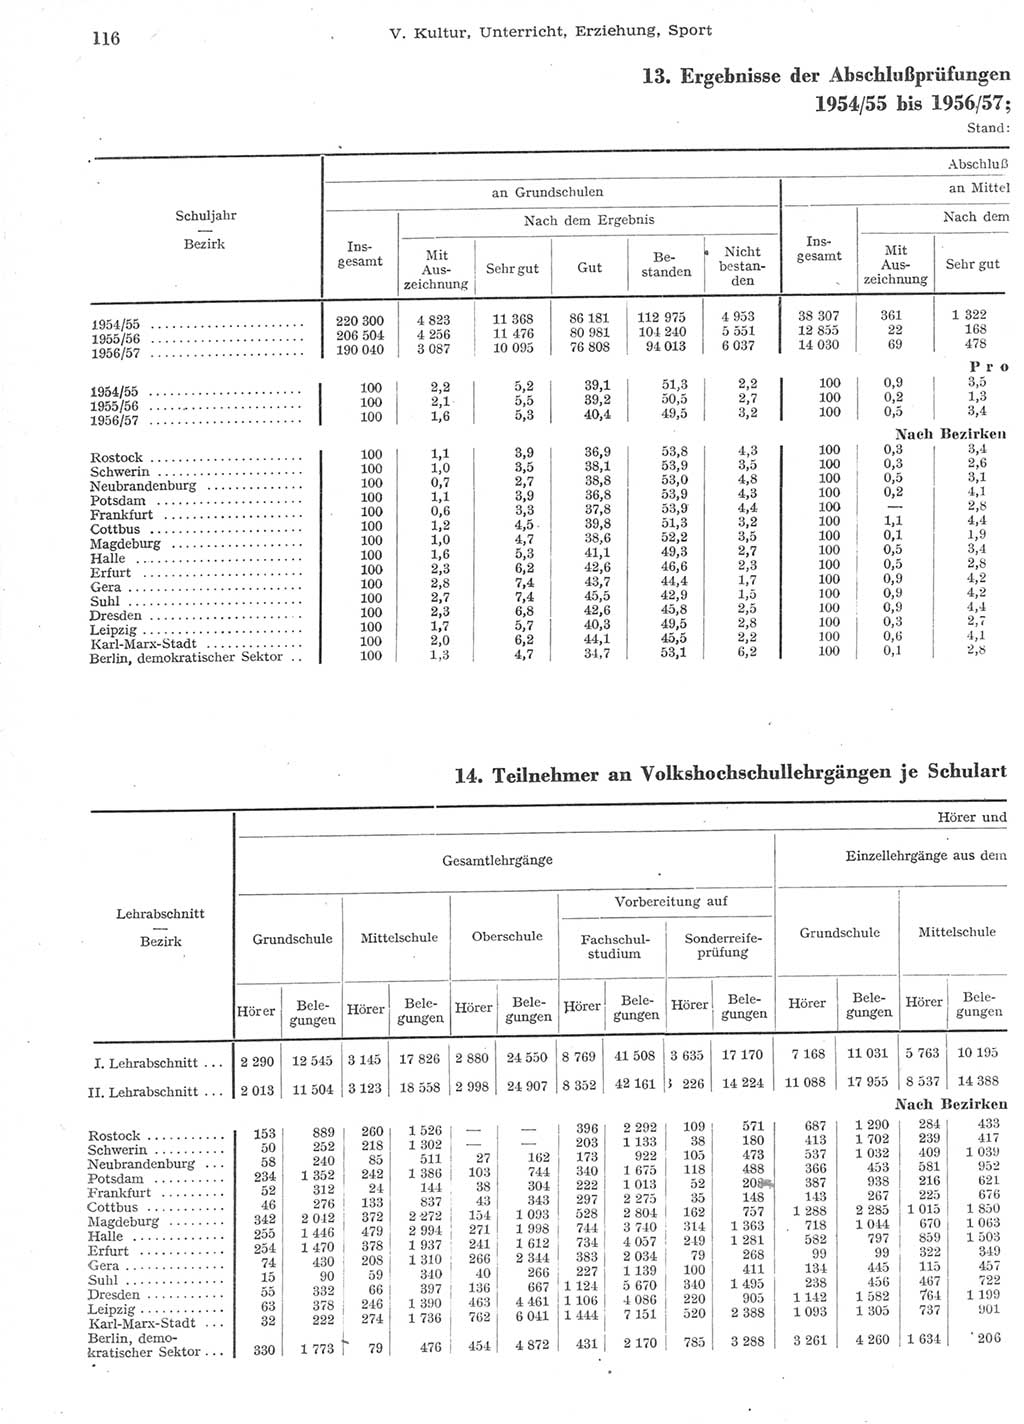 Statistisches Jahrbuch der Deutschen Demokratischen Republik (DDR) 1957, Seite 116 (Stat. Jb. DDR 1957, S. 116)